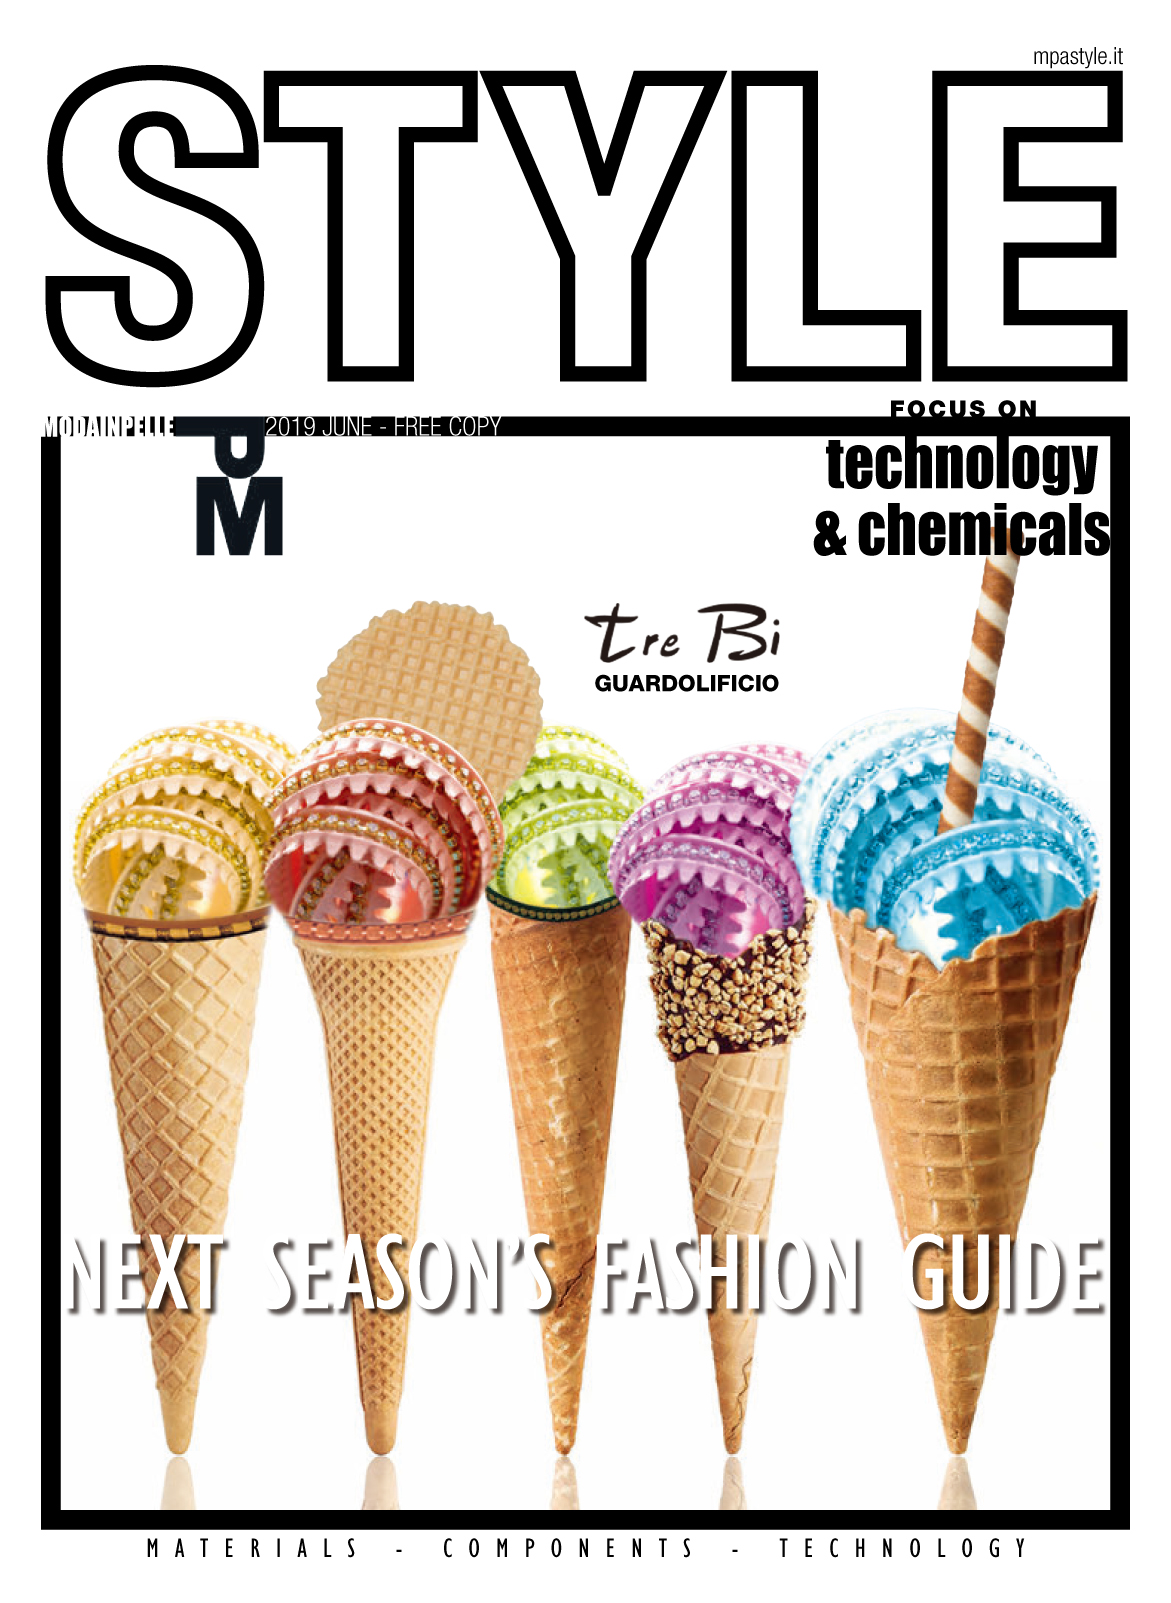 《Moda Pelle Style》意大利鞋包皮具专业杂志2017年06月号